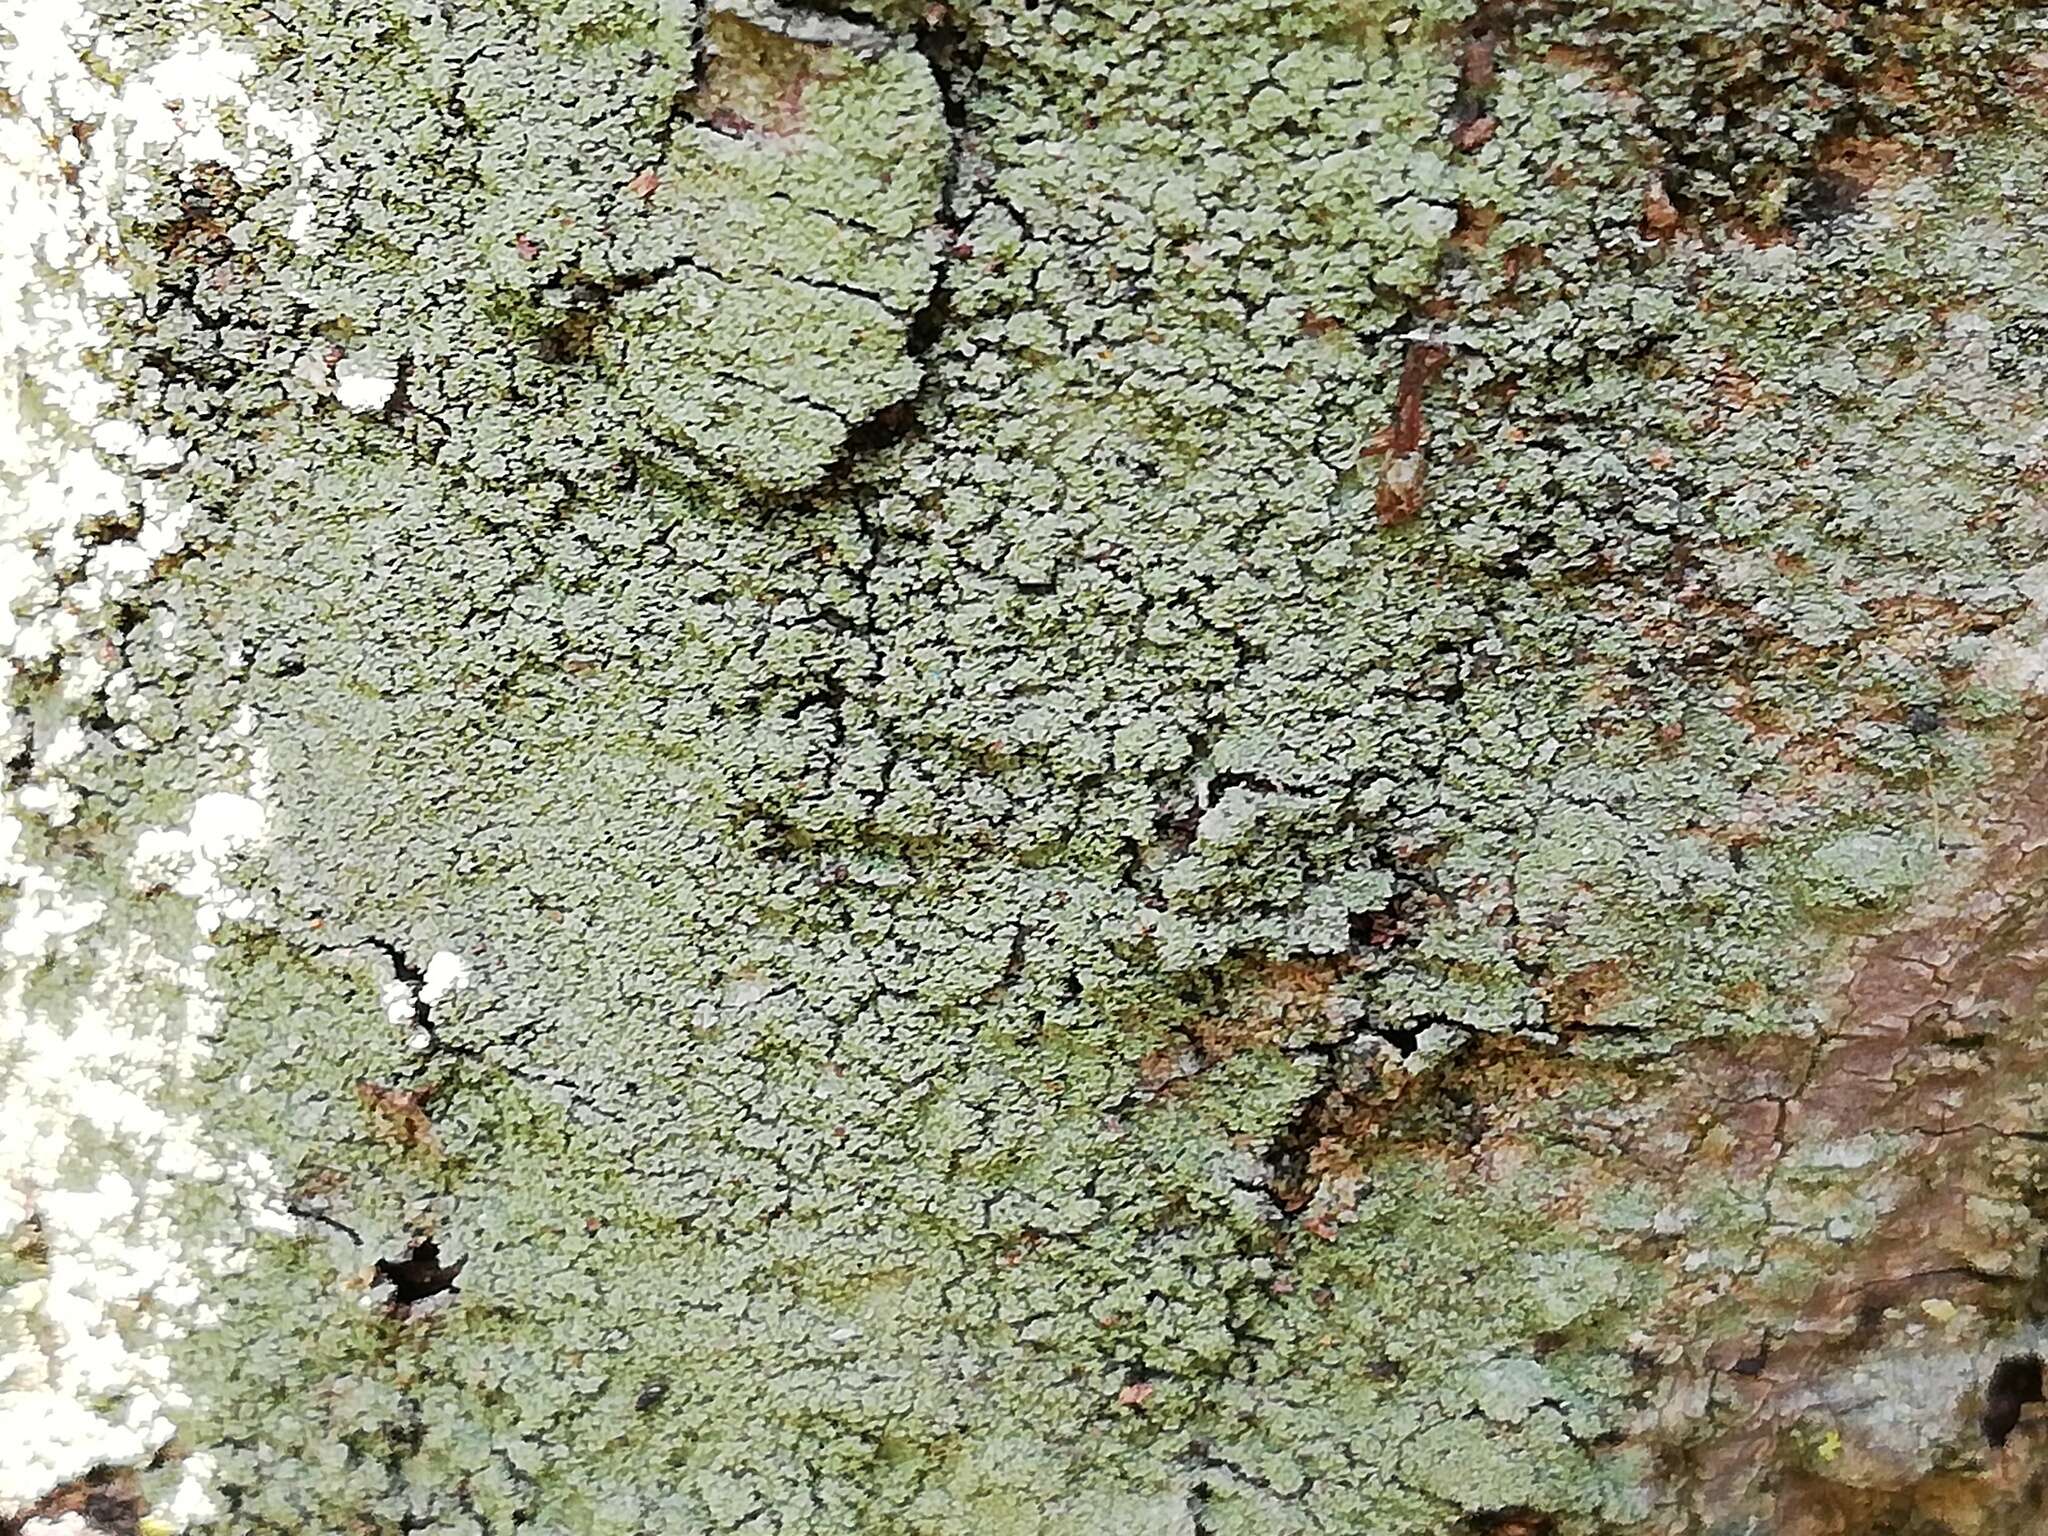 Image of smallleaf phyllopsora lichen